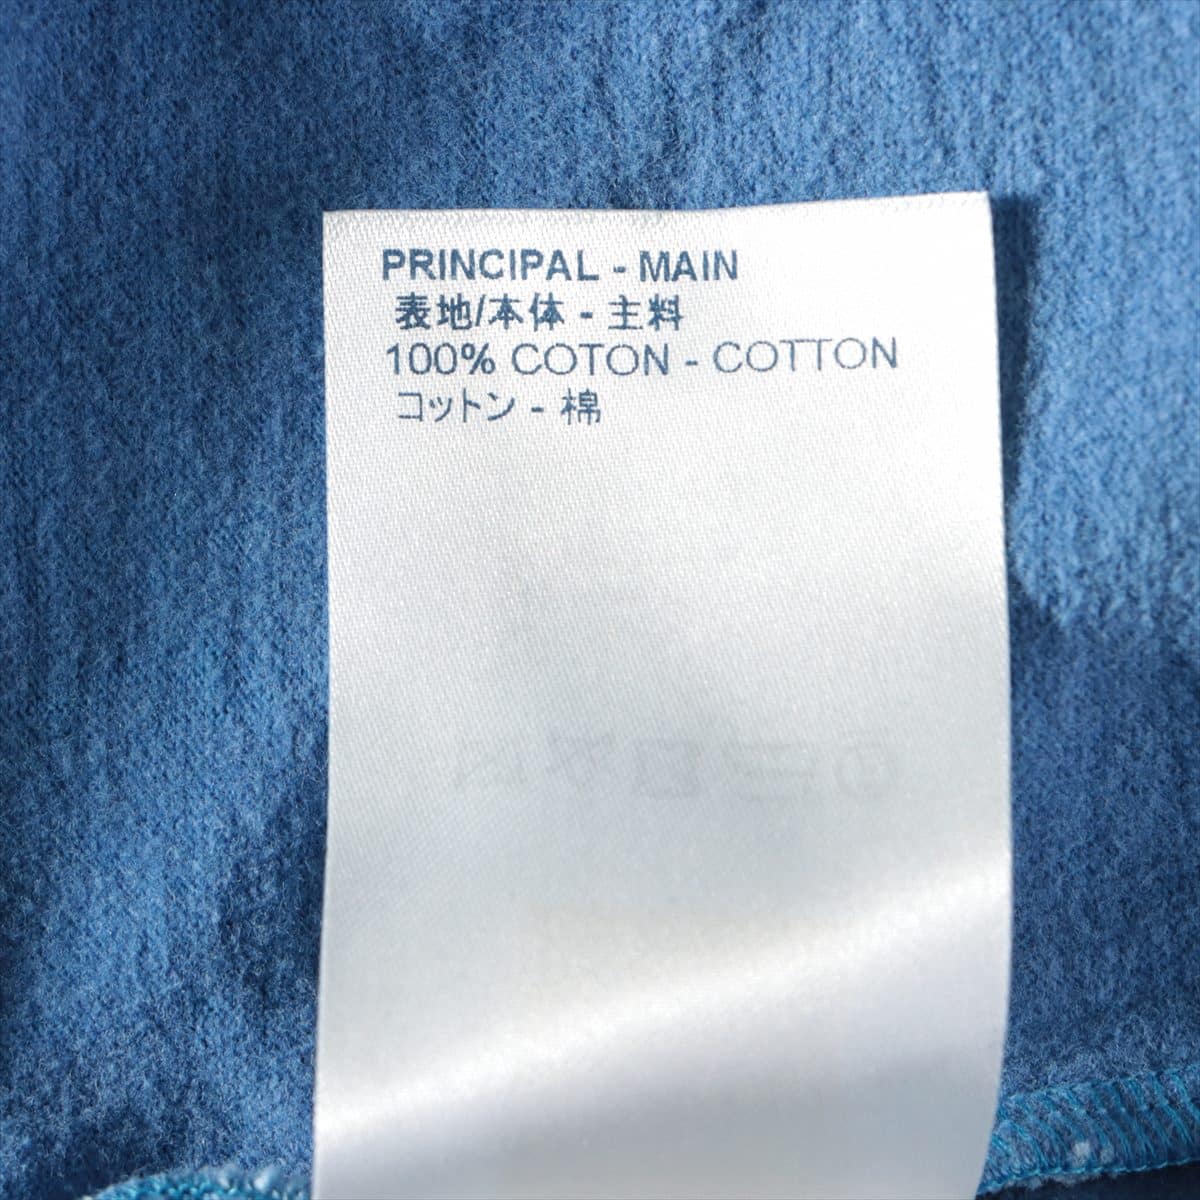 ルイヴィトン RM181 コットン Tシャツ S メンズ ブルー  リフレティクティブ ロゴ